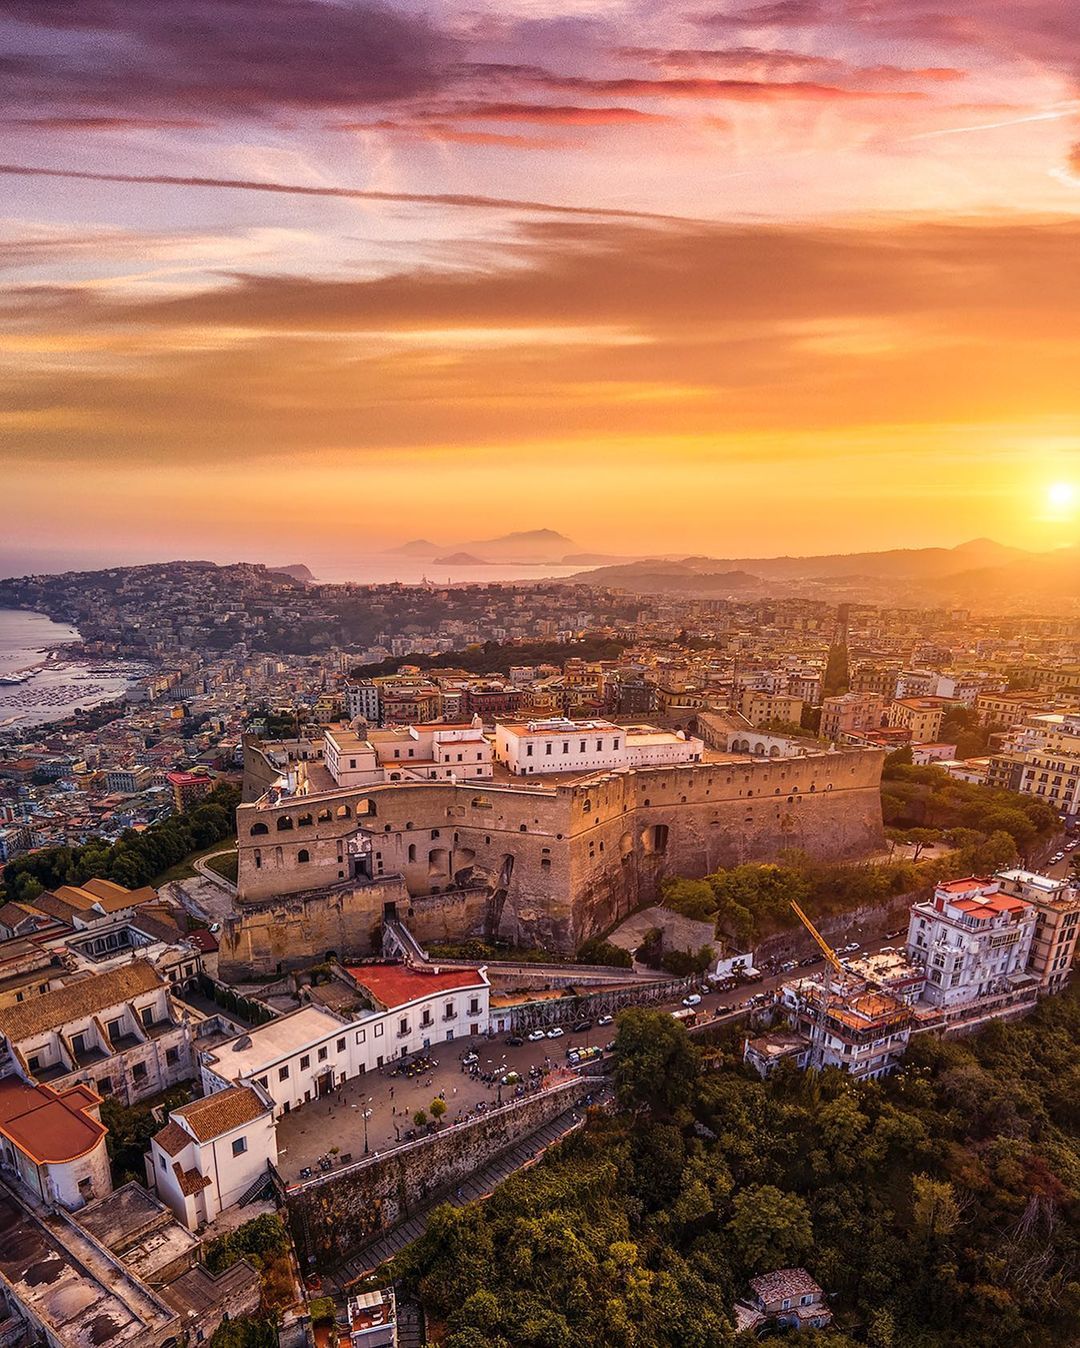 Da Castel Sant'Elmo il panorama a 360° più bello di Napoli: i castelli di Napoli | Napoli Vivere